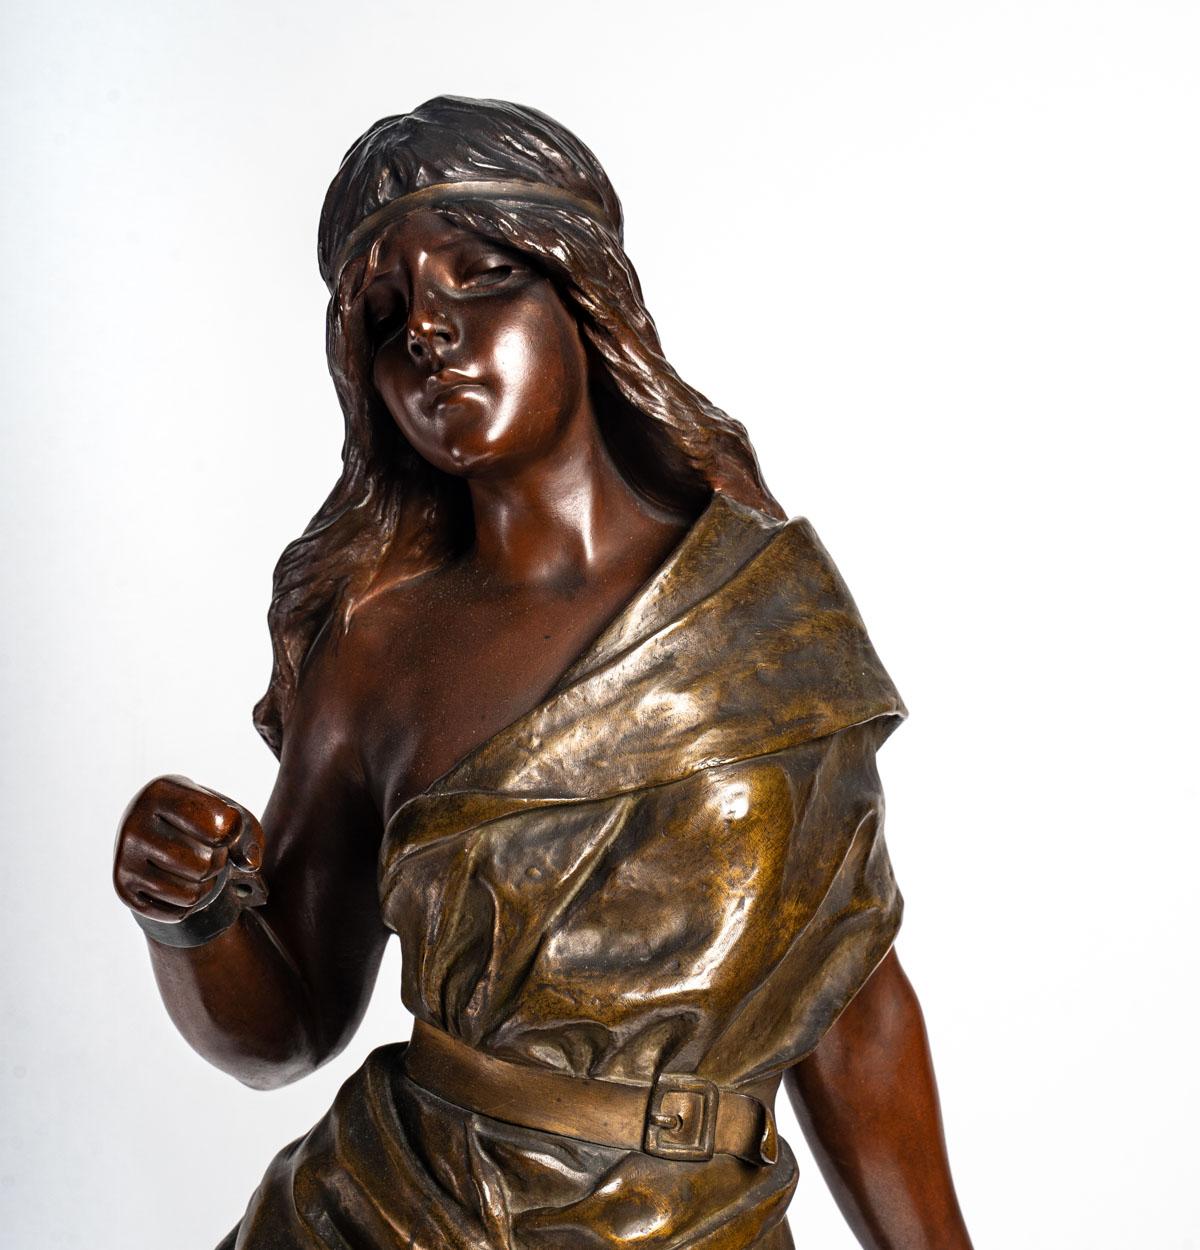 Important bronze, Art Nouveau, late 19th century.
Measures: H: 86 cm, W: 30 cm, D: 26 cm.